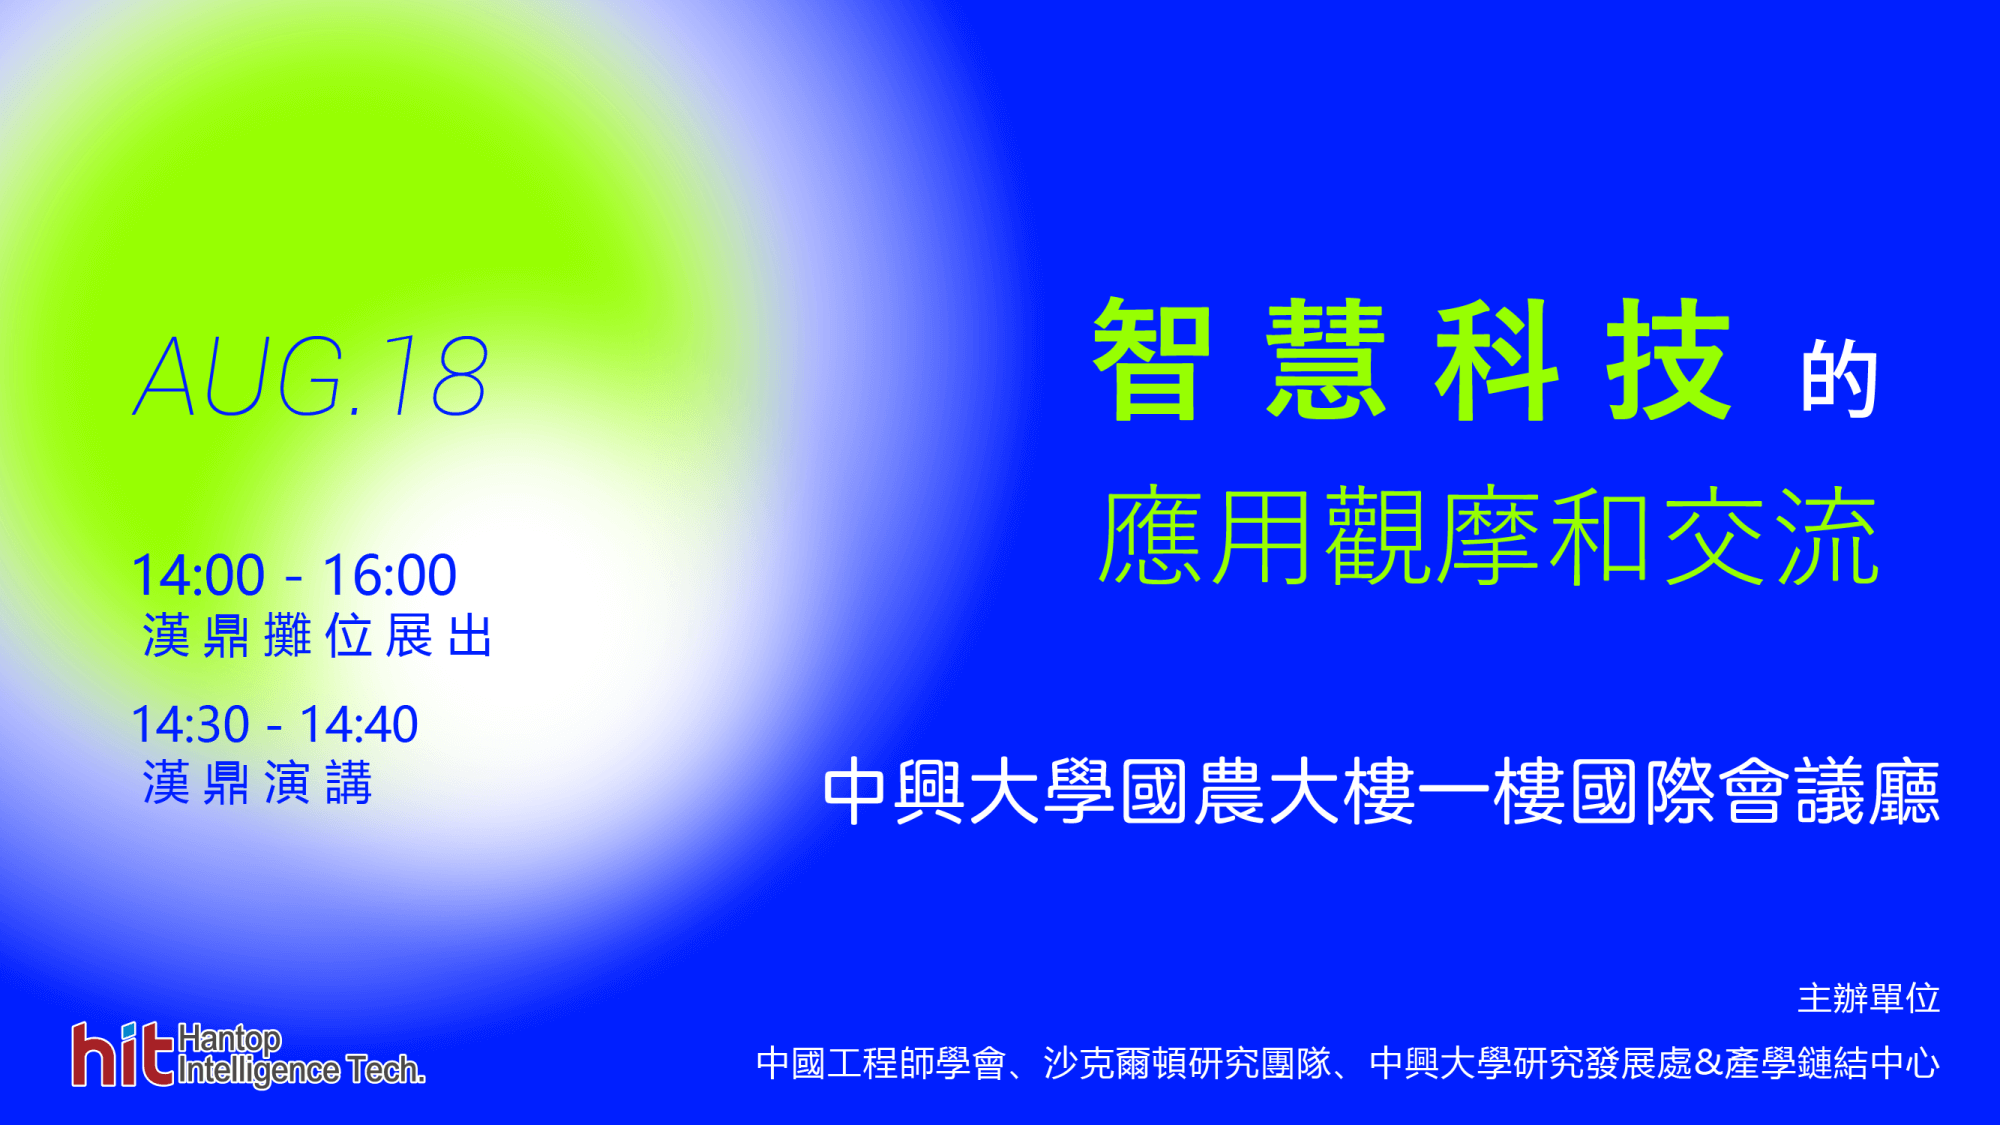 中國工程師學會-智慧科技的應用觀摩與交流展覽資訊